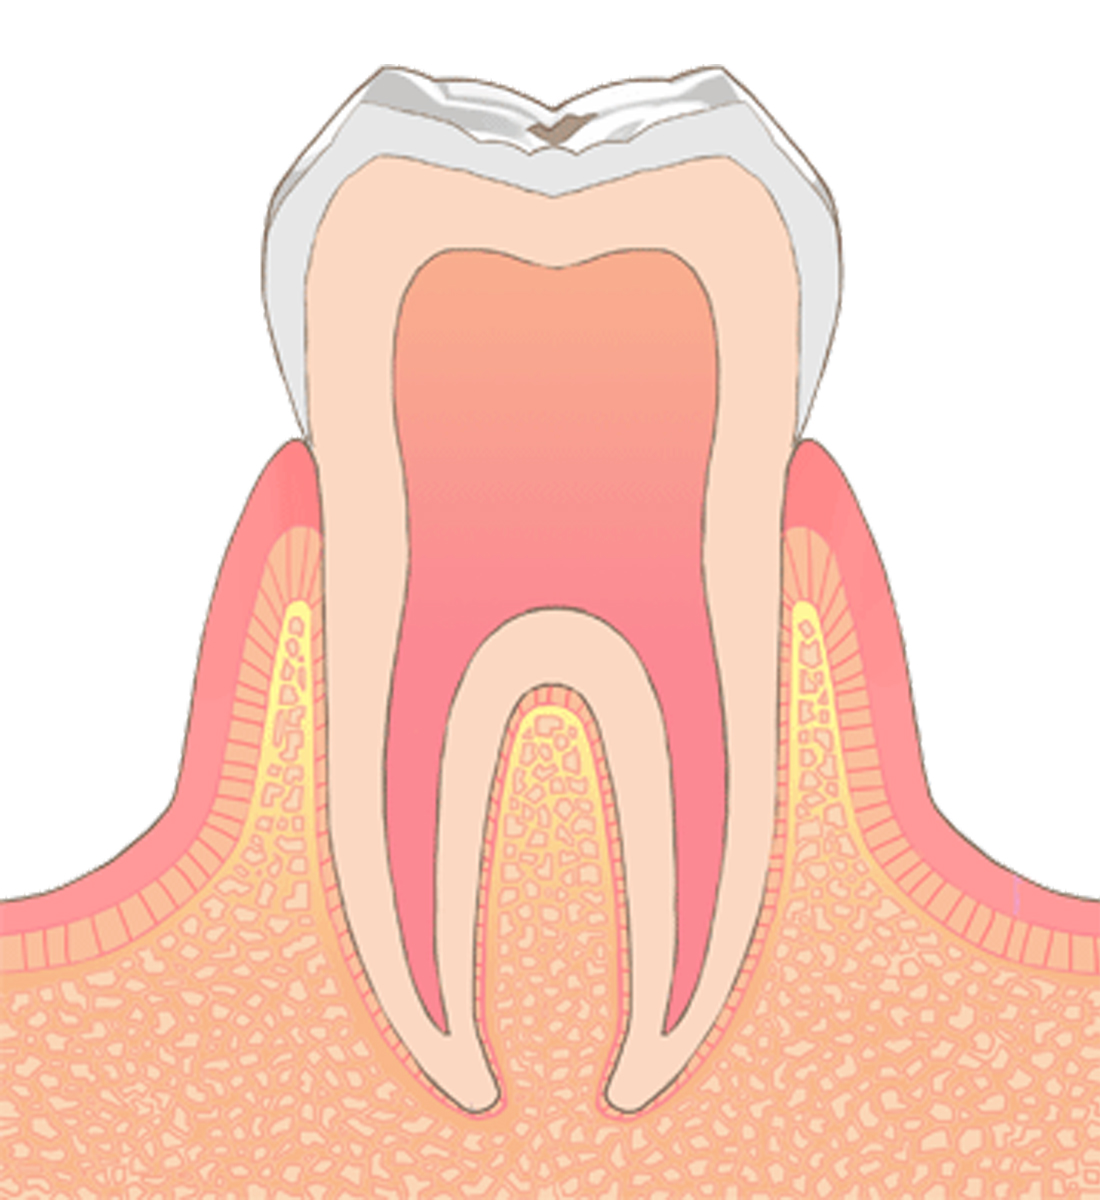 C0→虫歯の初期状態